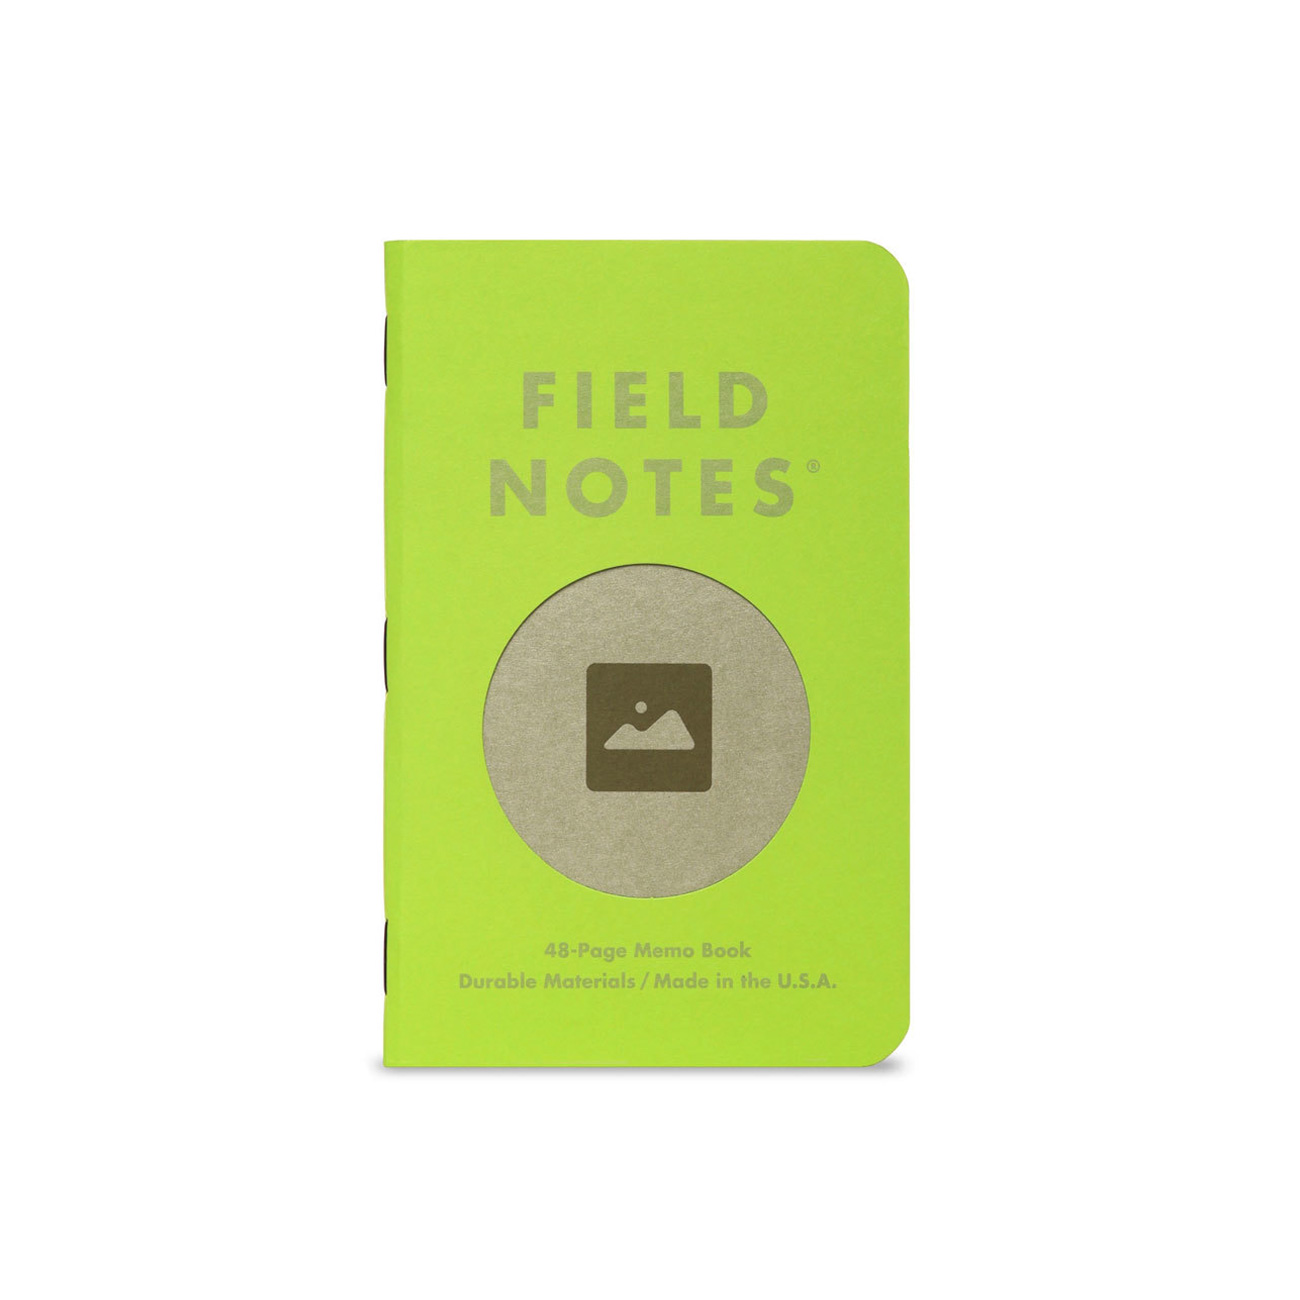 Field Notes, Vignette Edition, ein grünes Notizheft, zwei graue Notizhefte